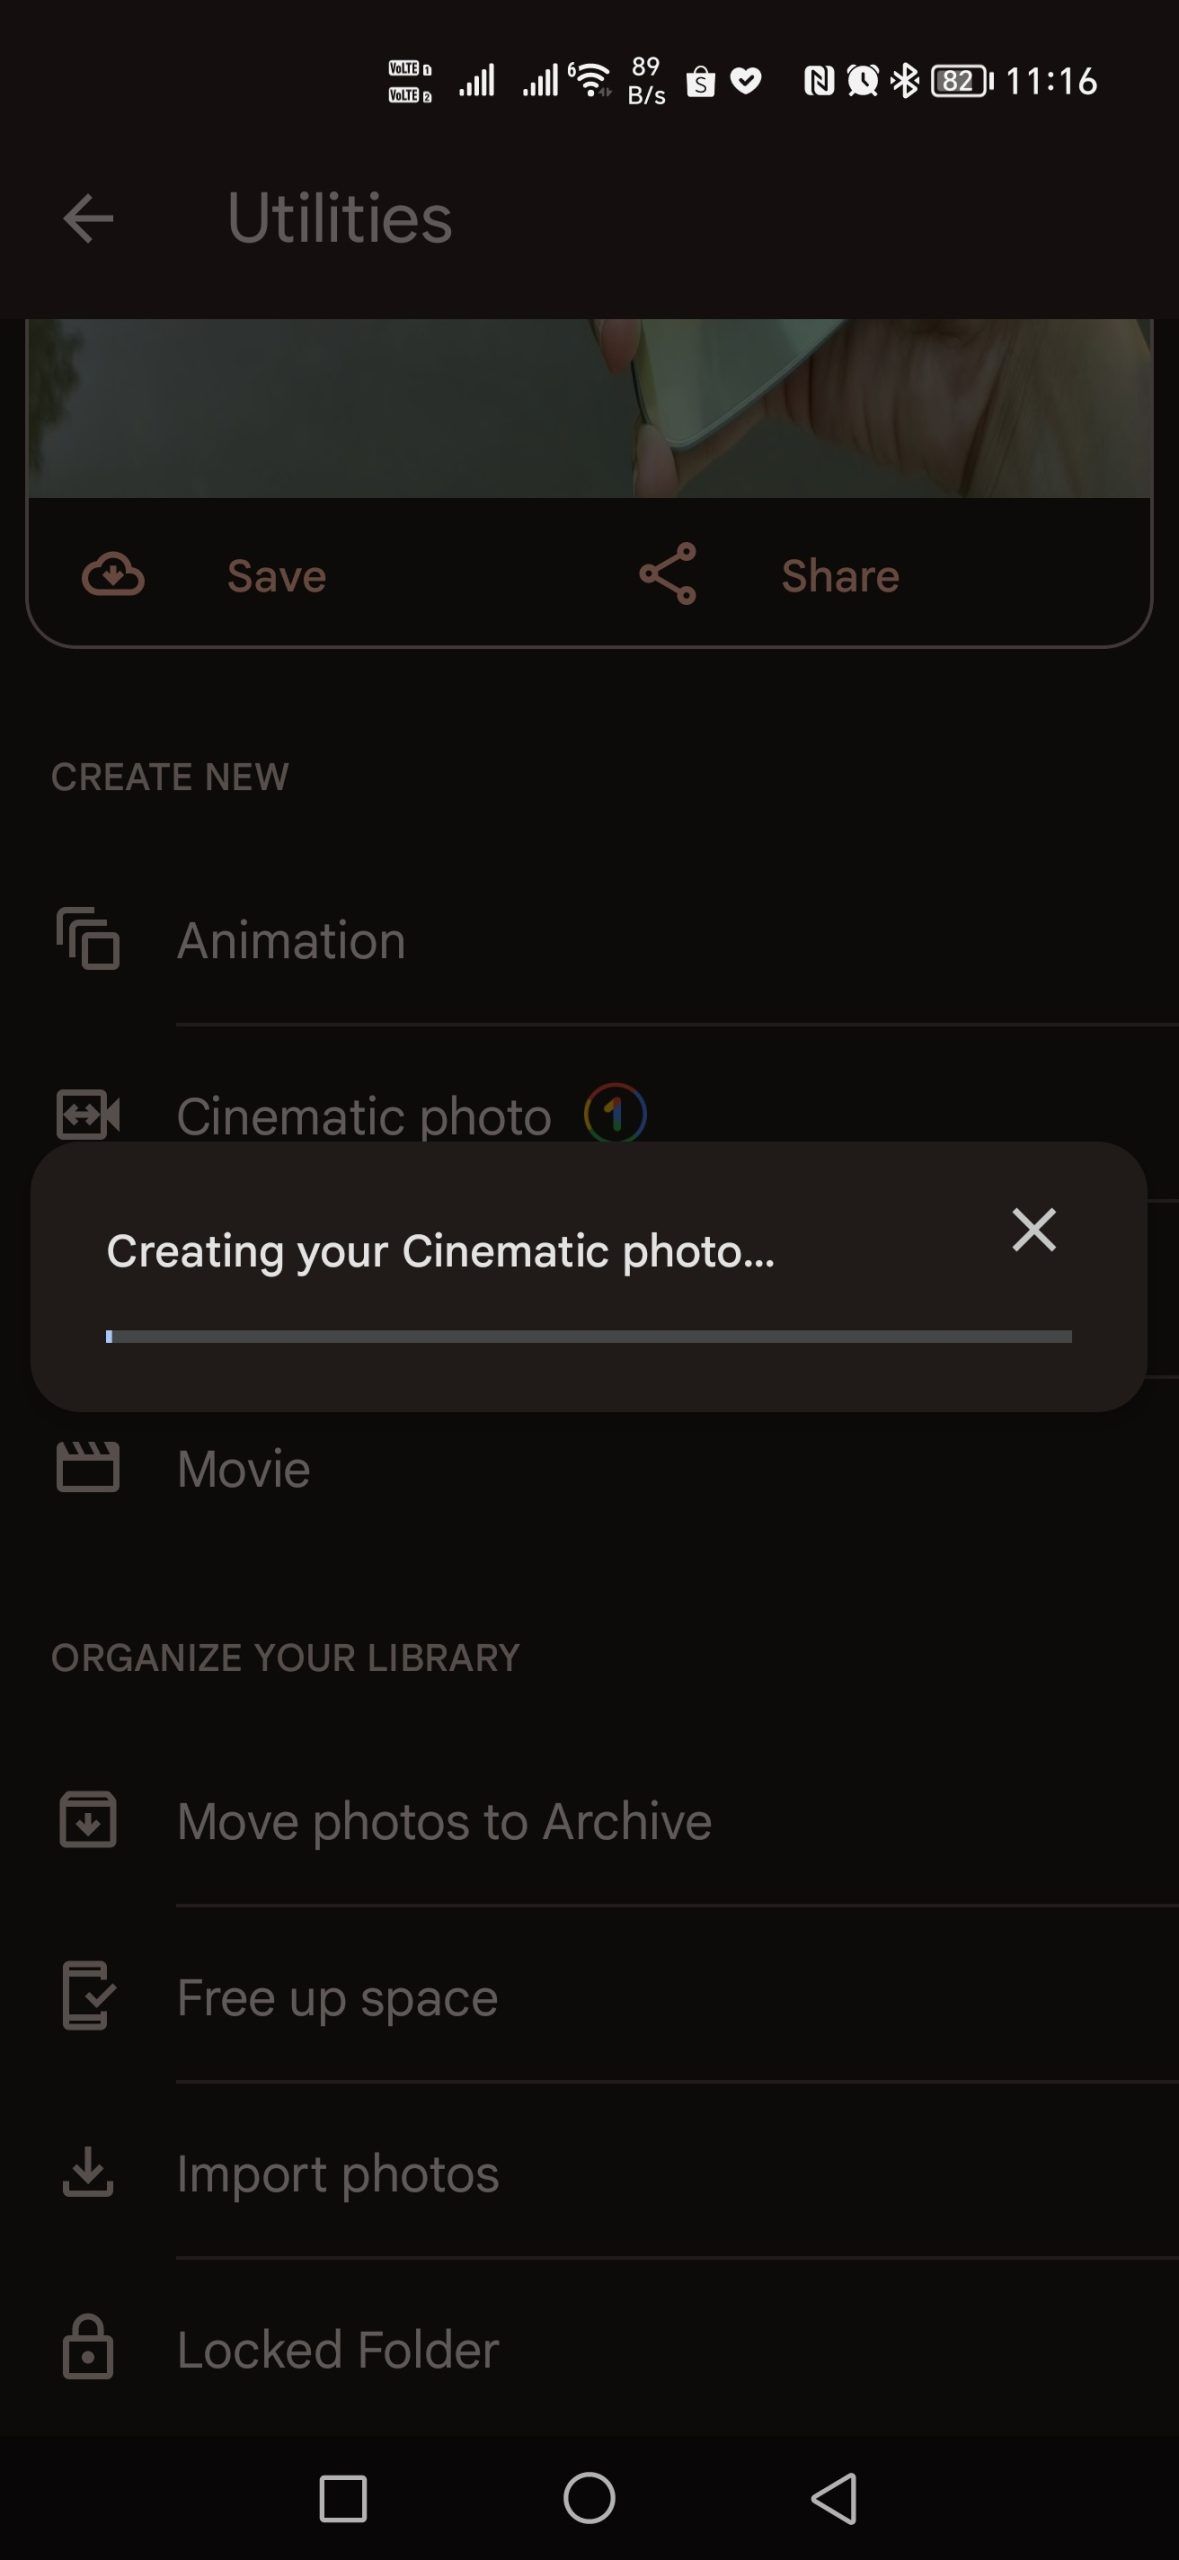 ของเล่นใหม่…Google Photos เปิดฟีเจอร์ Cinematic photo เปลี่ยนภาพถ่ายเป็นภาพเคลื่อนไหว 3 มิติ ให้ใช้ได้แล้ว